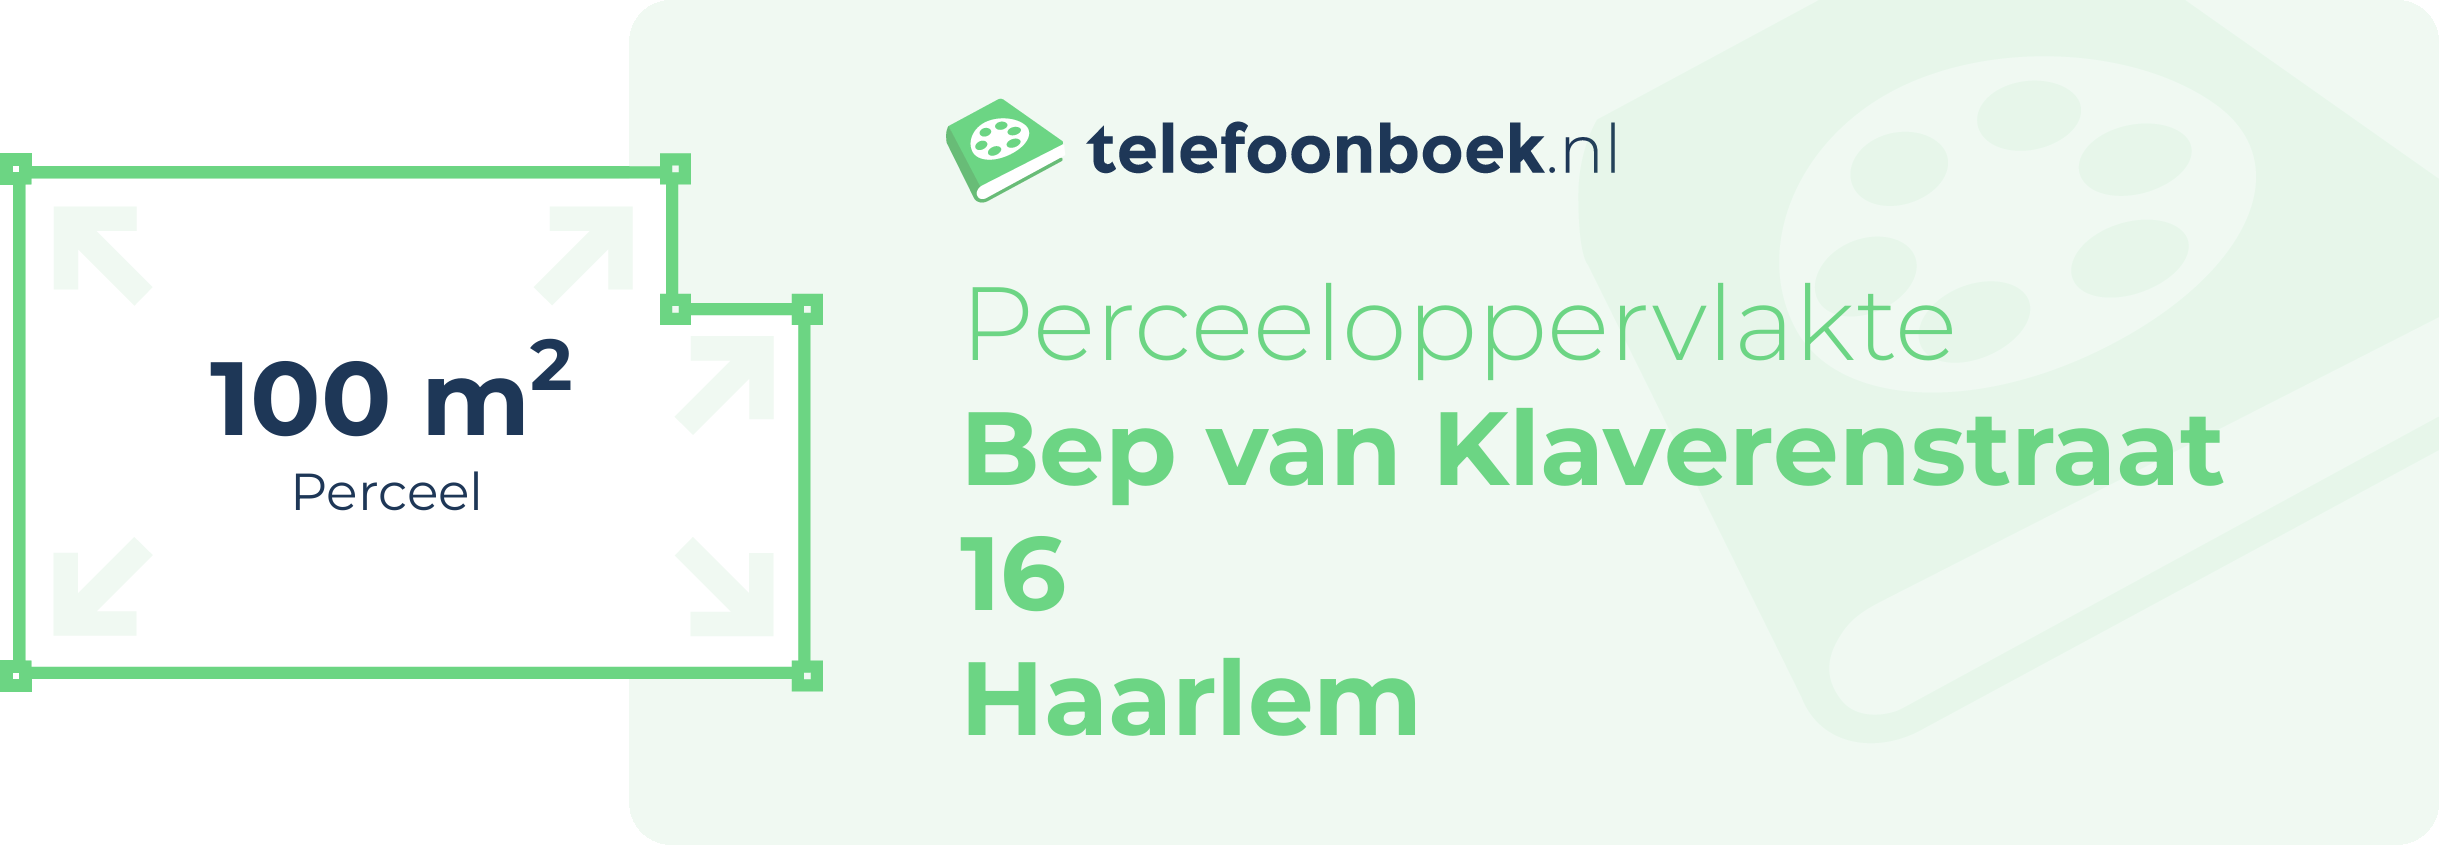 Perceeloppervlakte Bep Van Klaverenstraat 16 Haarlem